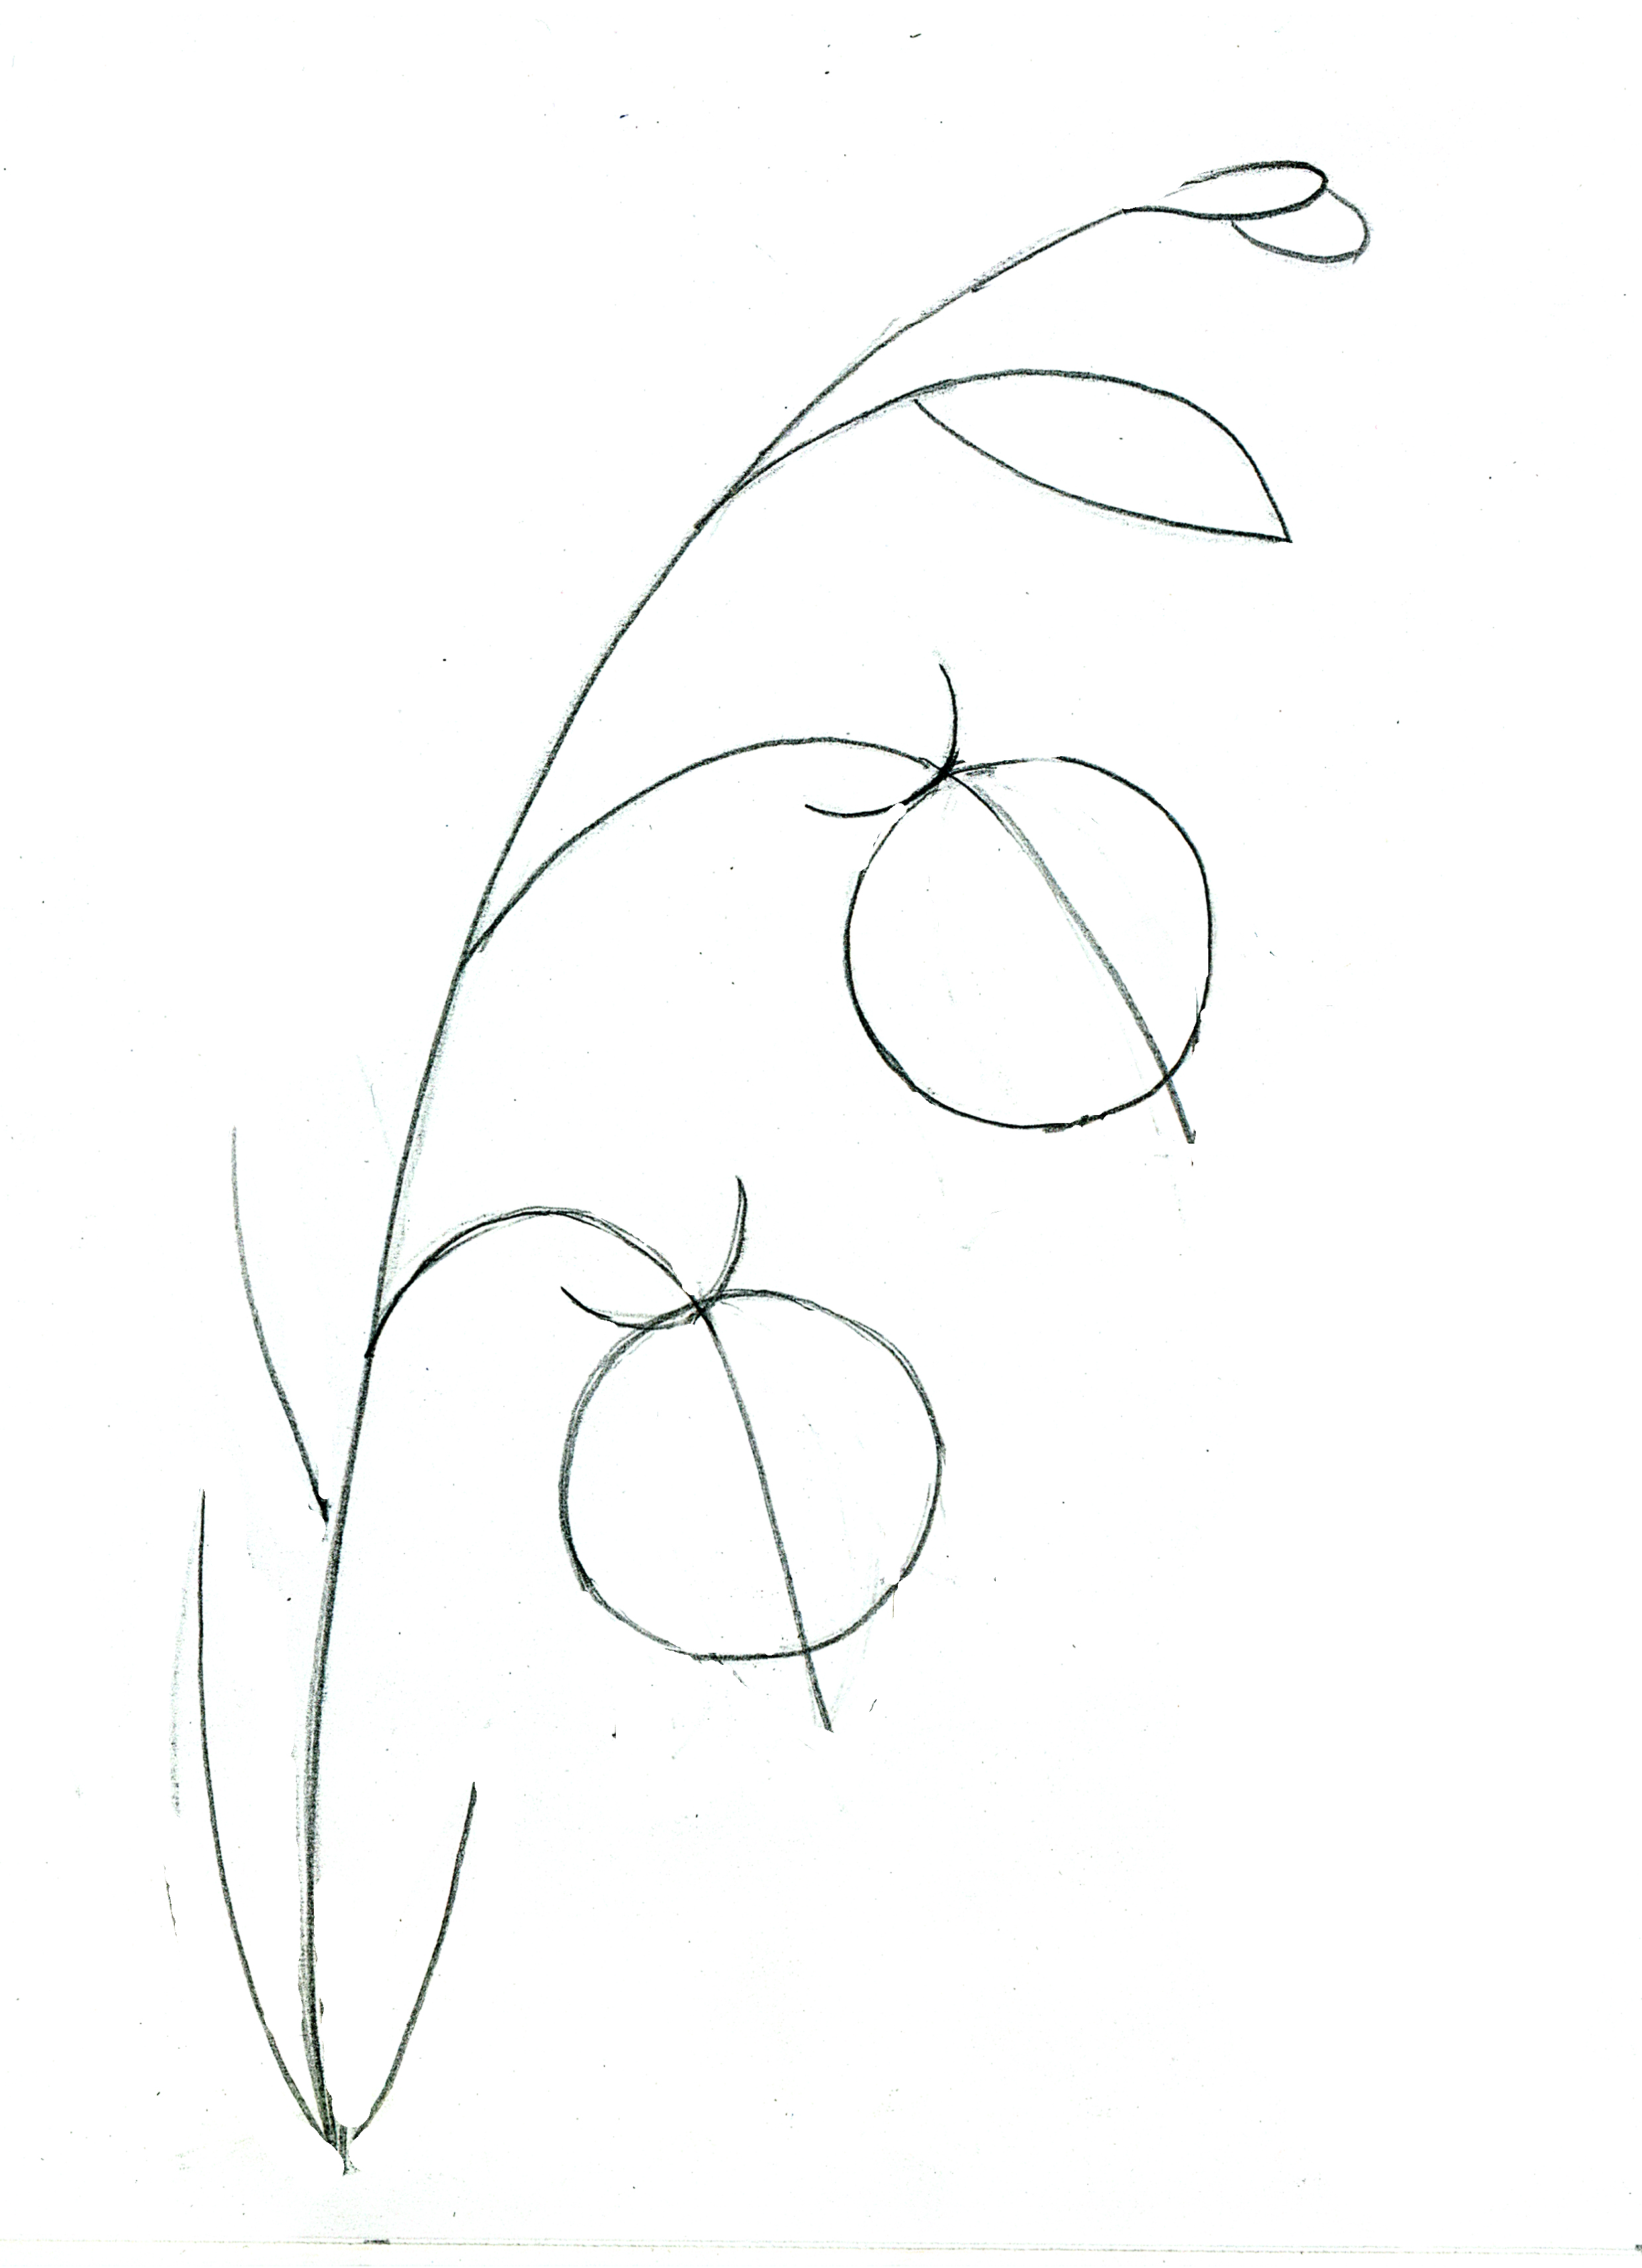 Как нарисовать цветок поэтапно • Моя КрохаМоя Кроха